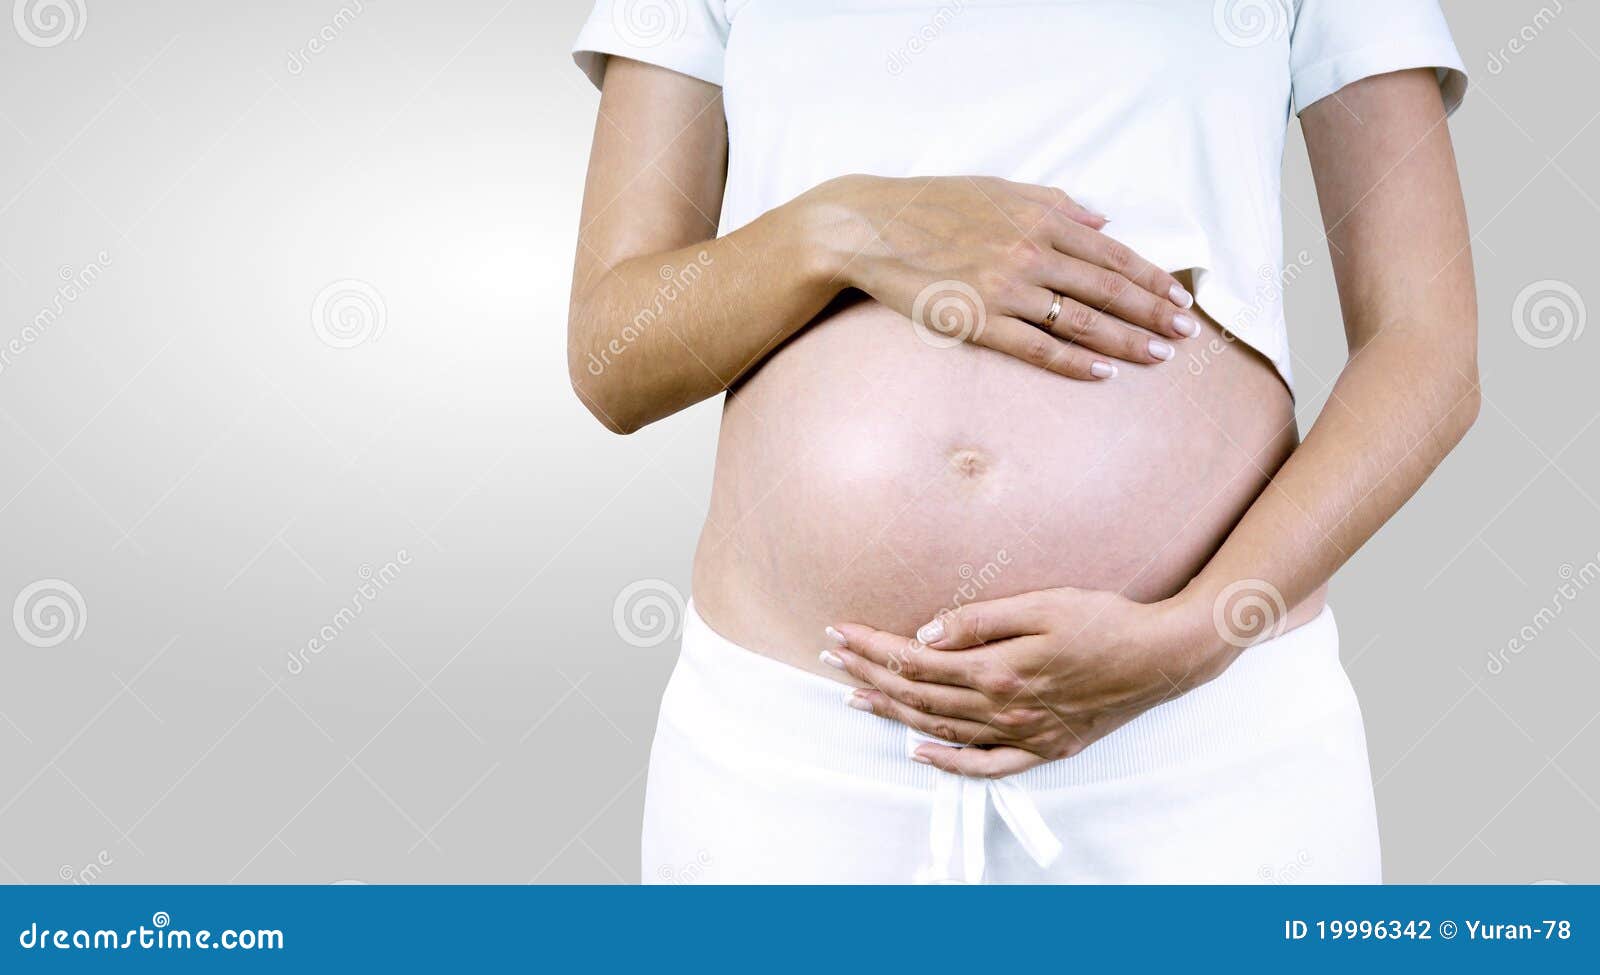 Как беременность связана с уреаплазмой: Опыт будущих мам